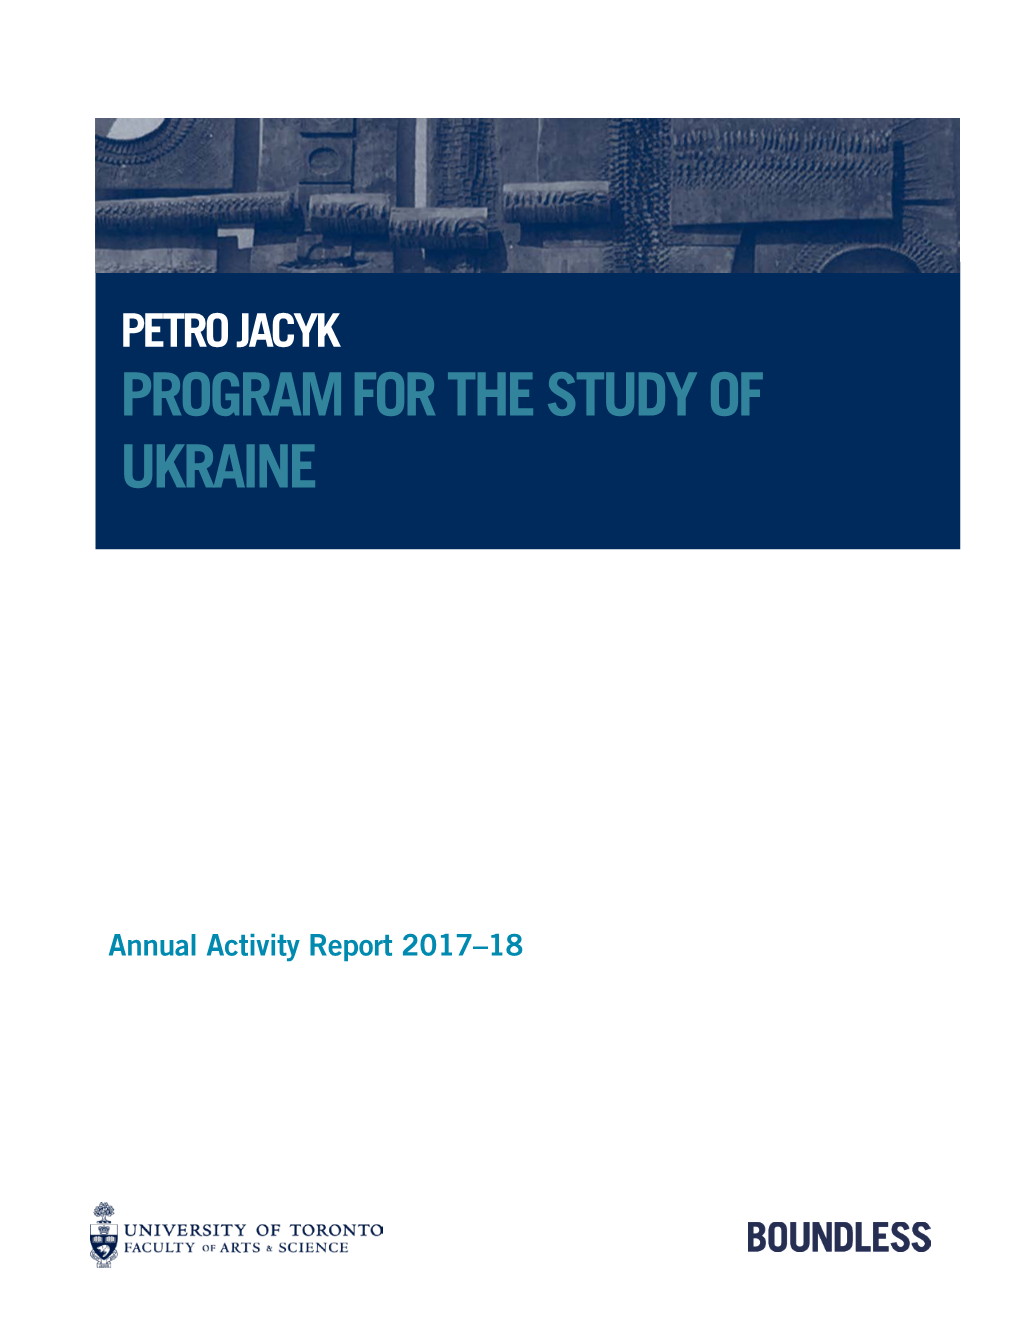 Petro Jacyk Program for the Study of Ukraine